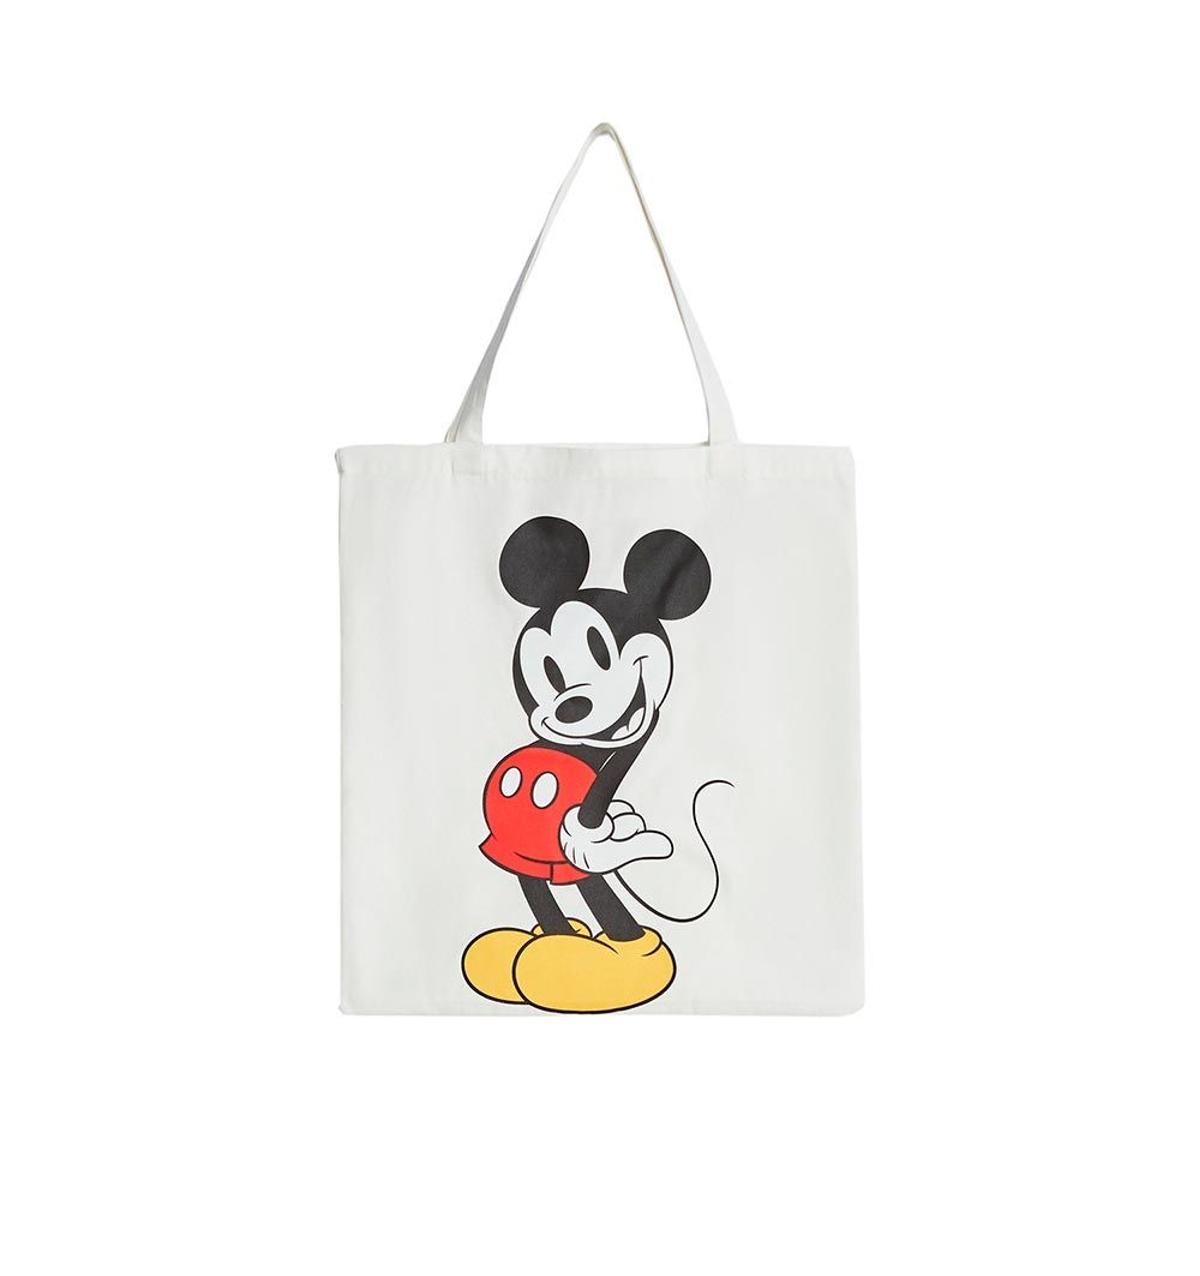 Bolso shopper de tela de la colección de Mickey Mouse de Bershka. (Precio: 9,99 euros)